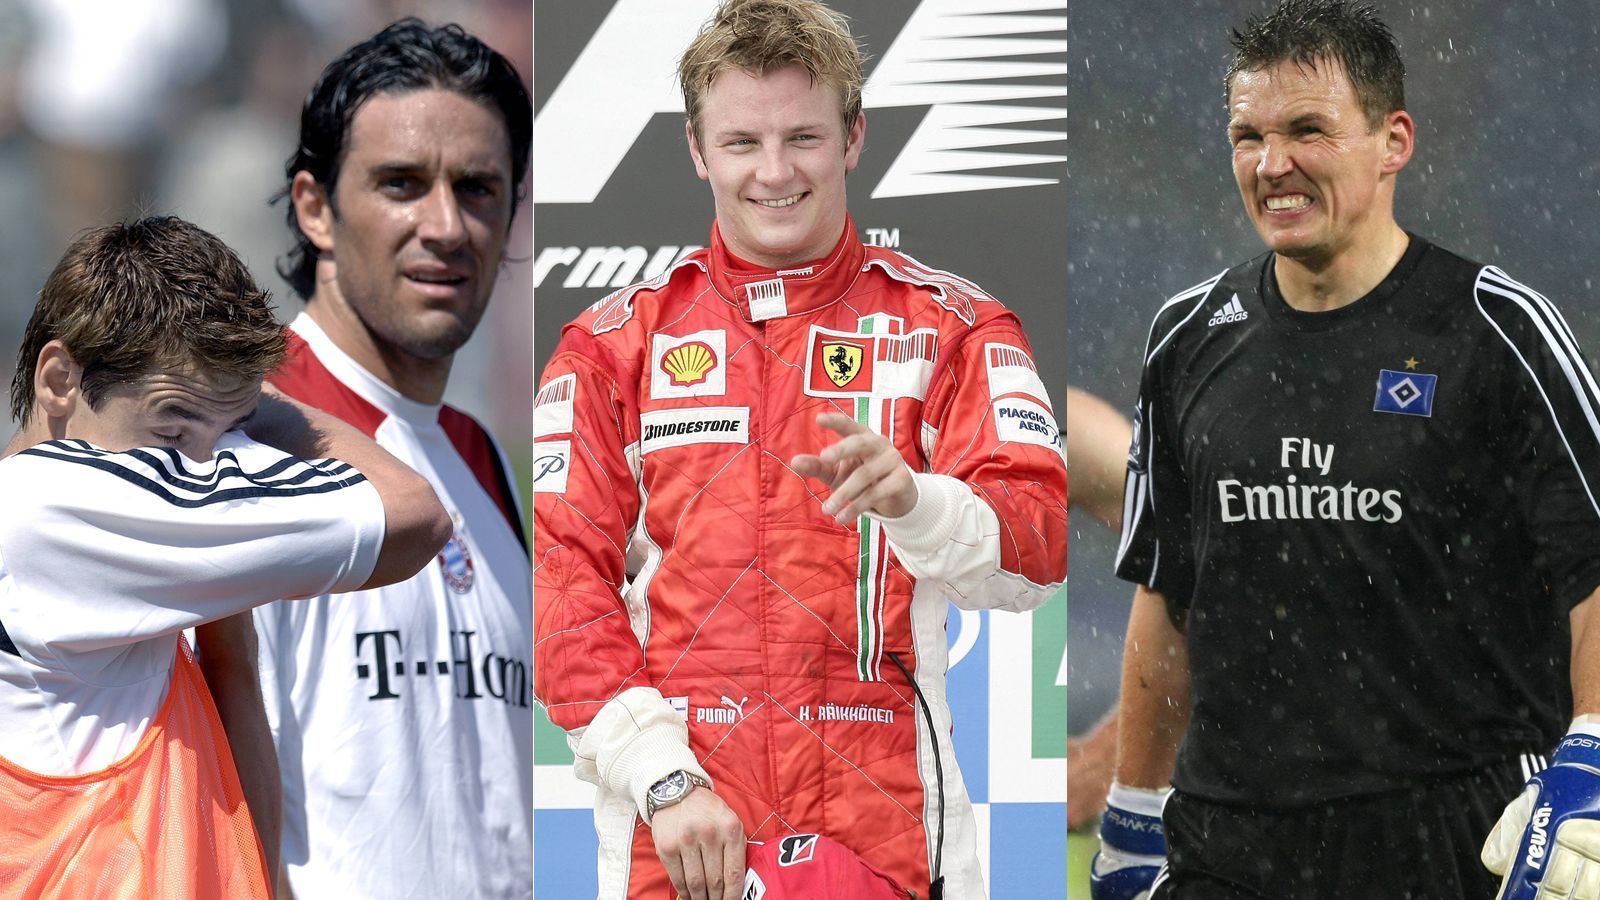 
                <strong>So sah die Welt aus, als Ferrari zuletzt den Titel holte</strong><br>
                Der letzte Fahrer-Titel für Ferrari ist schon eine Weile her: Der junge Kimi Räikkönen ließ die Scuderia 2007 jubeln, seitdem herrscht Flaute. ran.de zeigt, wie die Welt damals aussah.
              